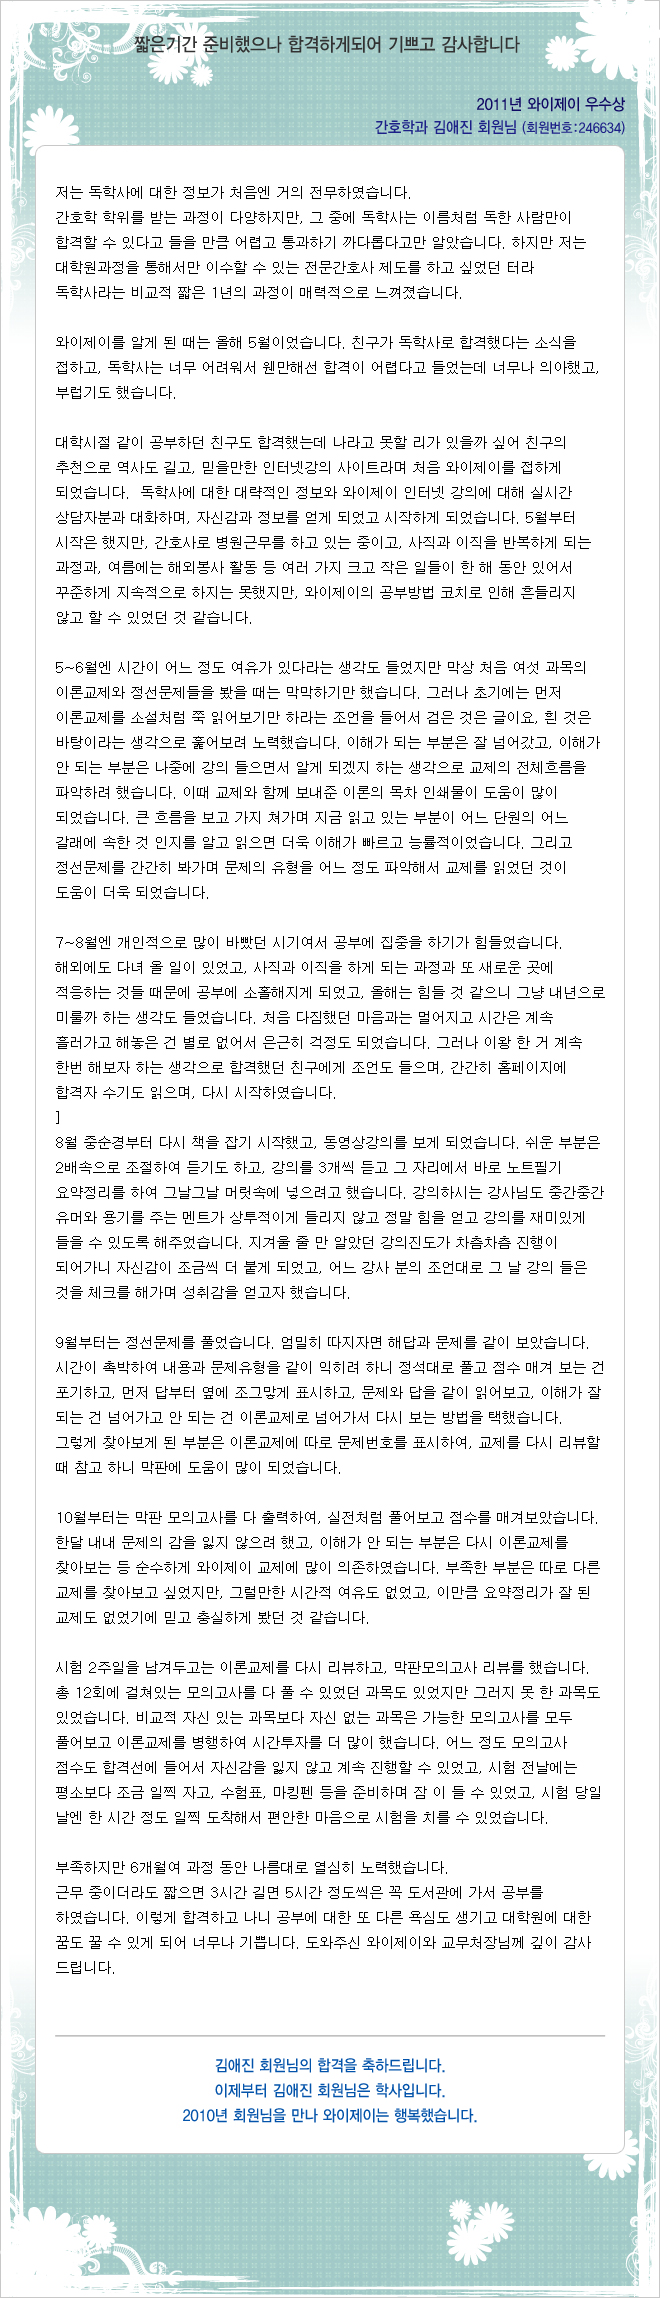 김애진 회원님의 합격수기